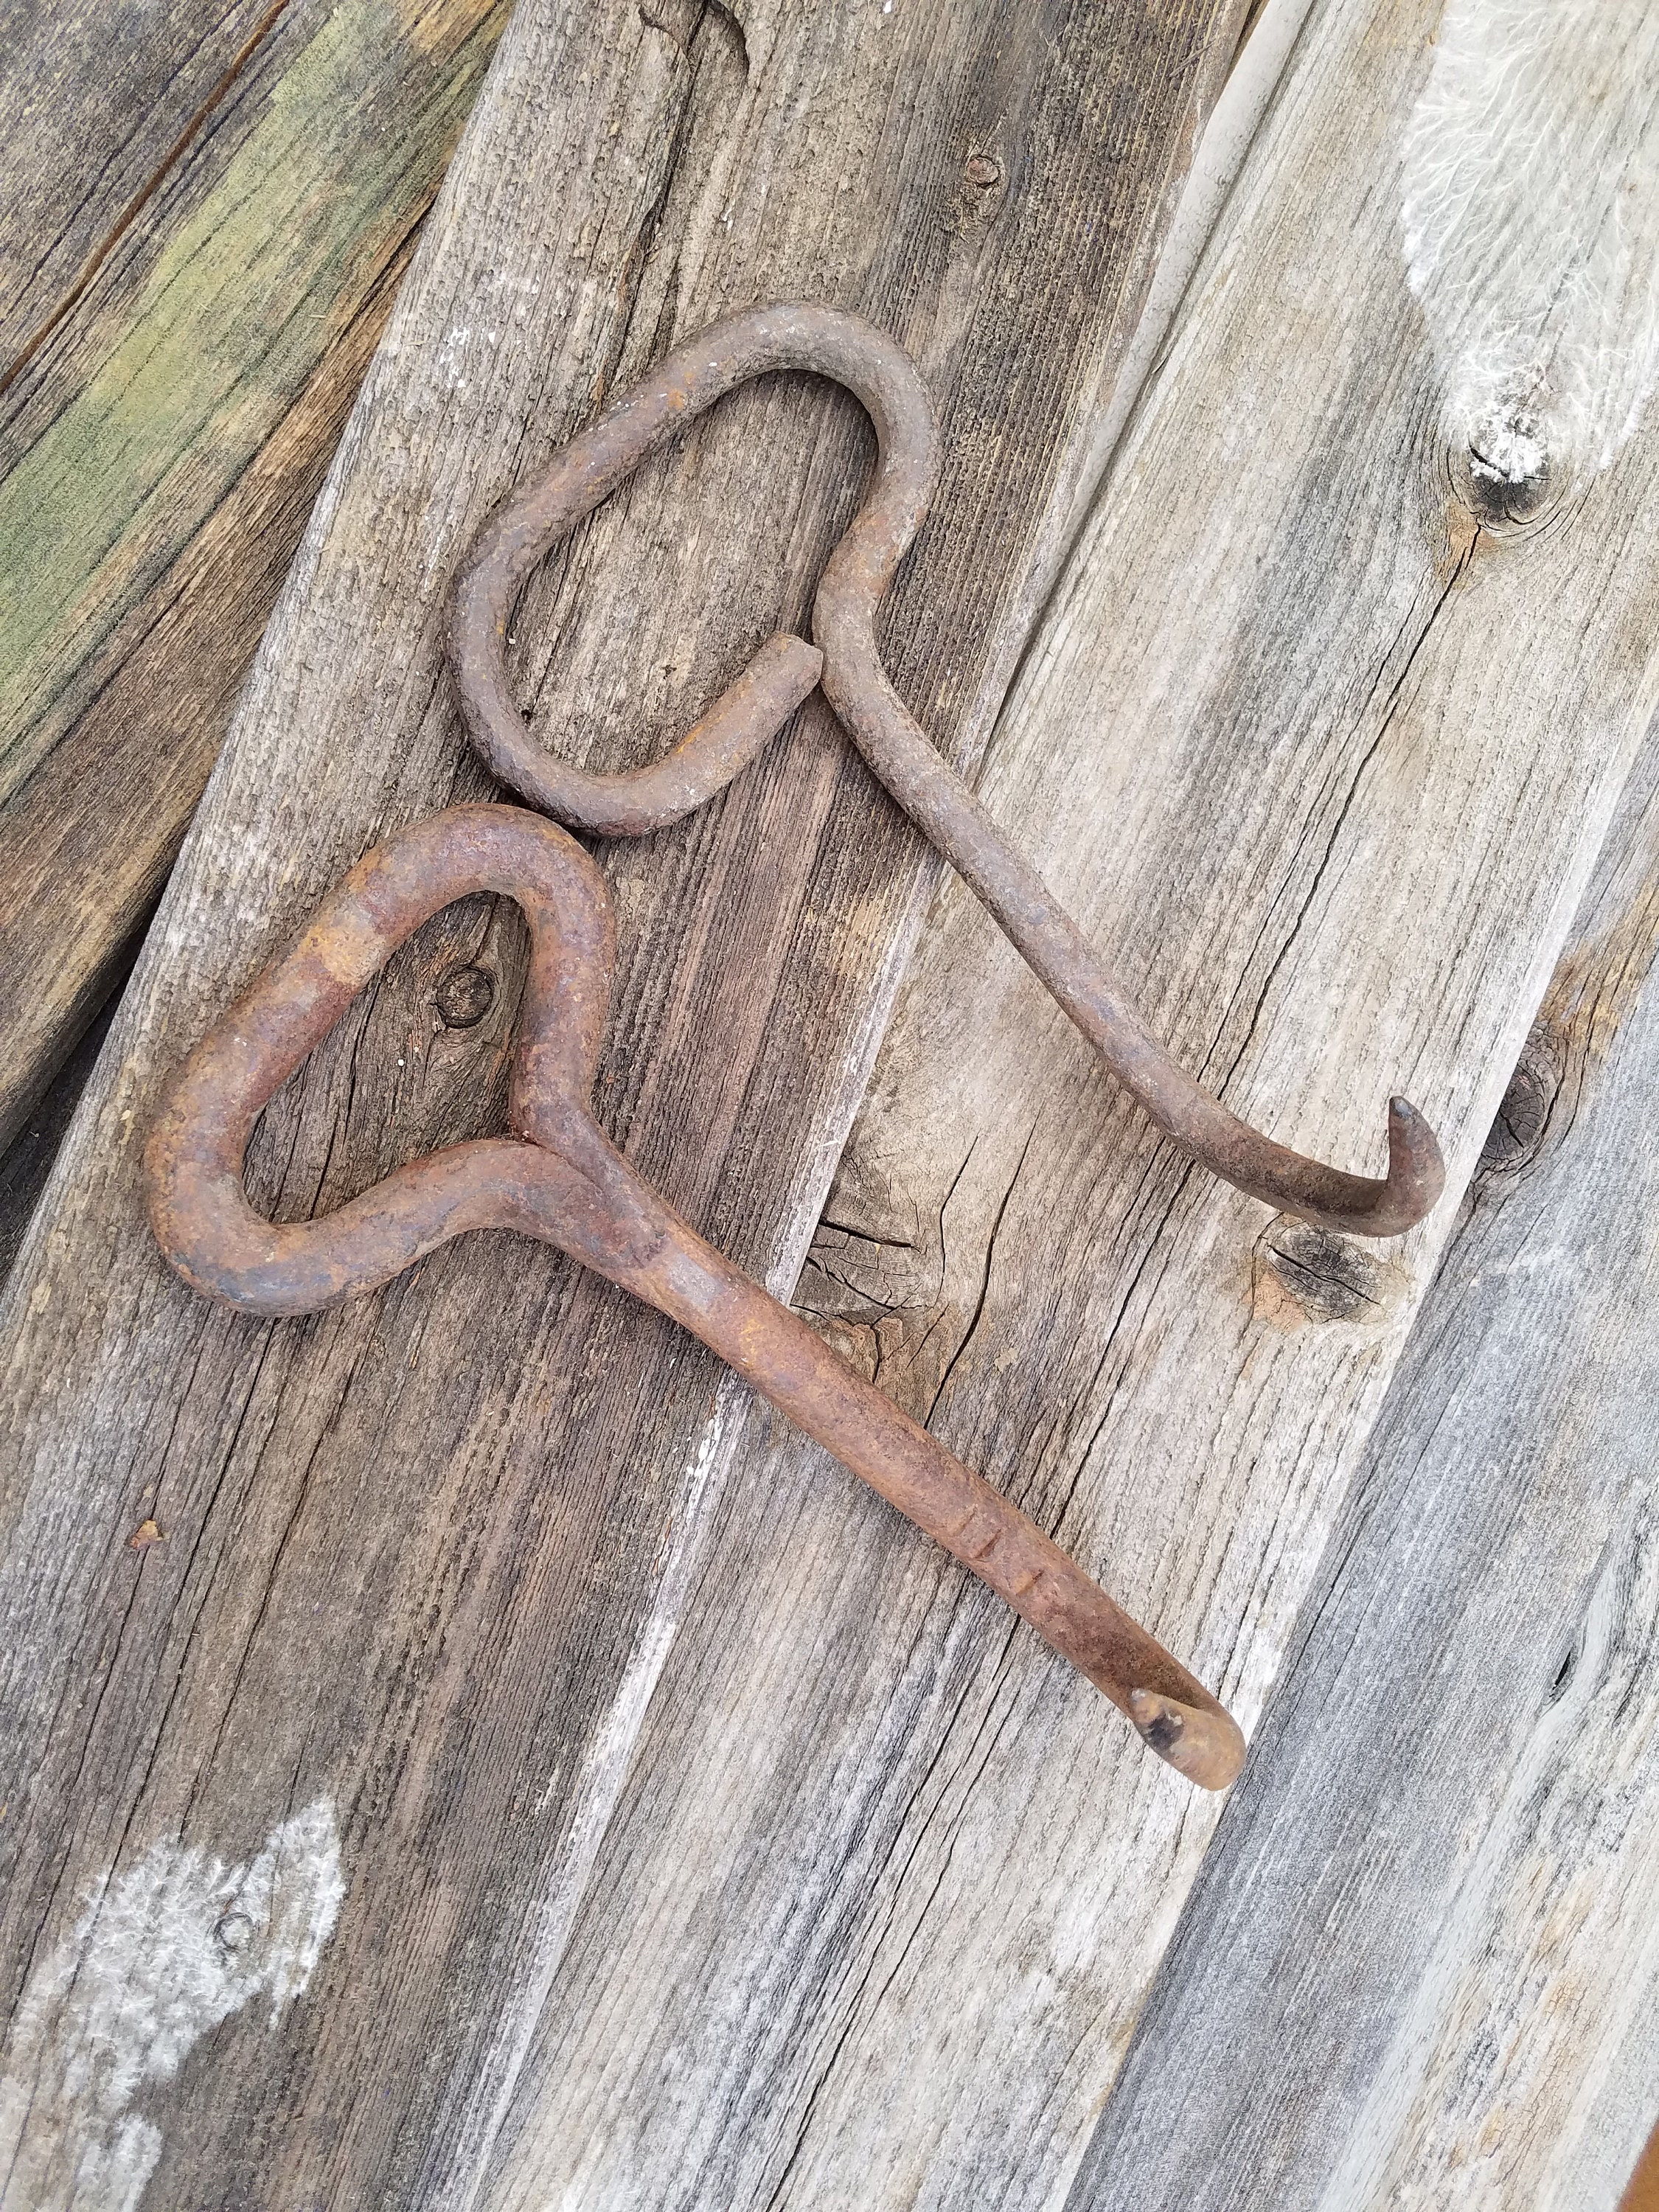 Hay Hooks/ Meat Hooks/ Rustic Hooks/ Vintage Hooks/ Rusty Metal